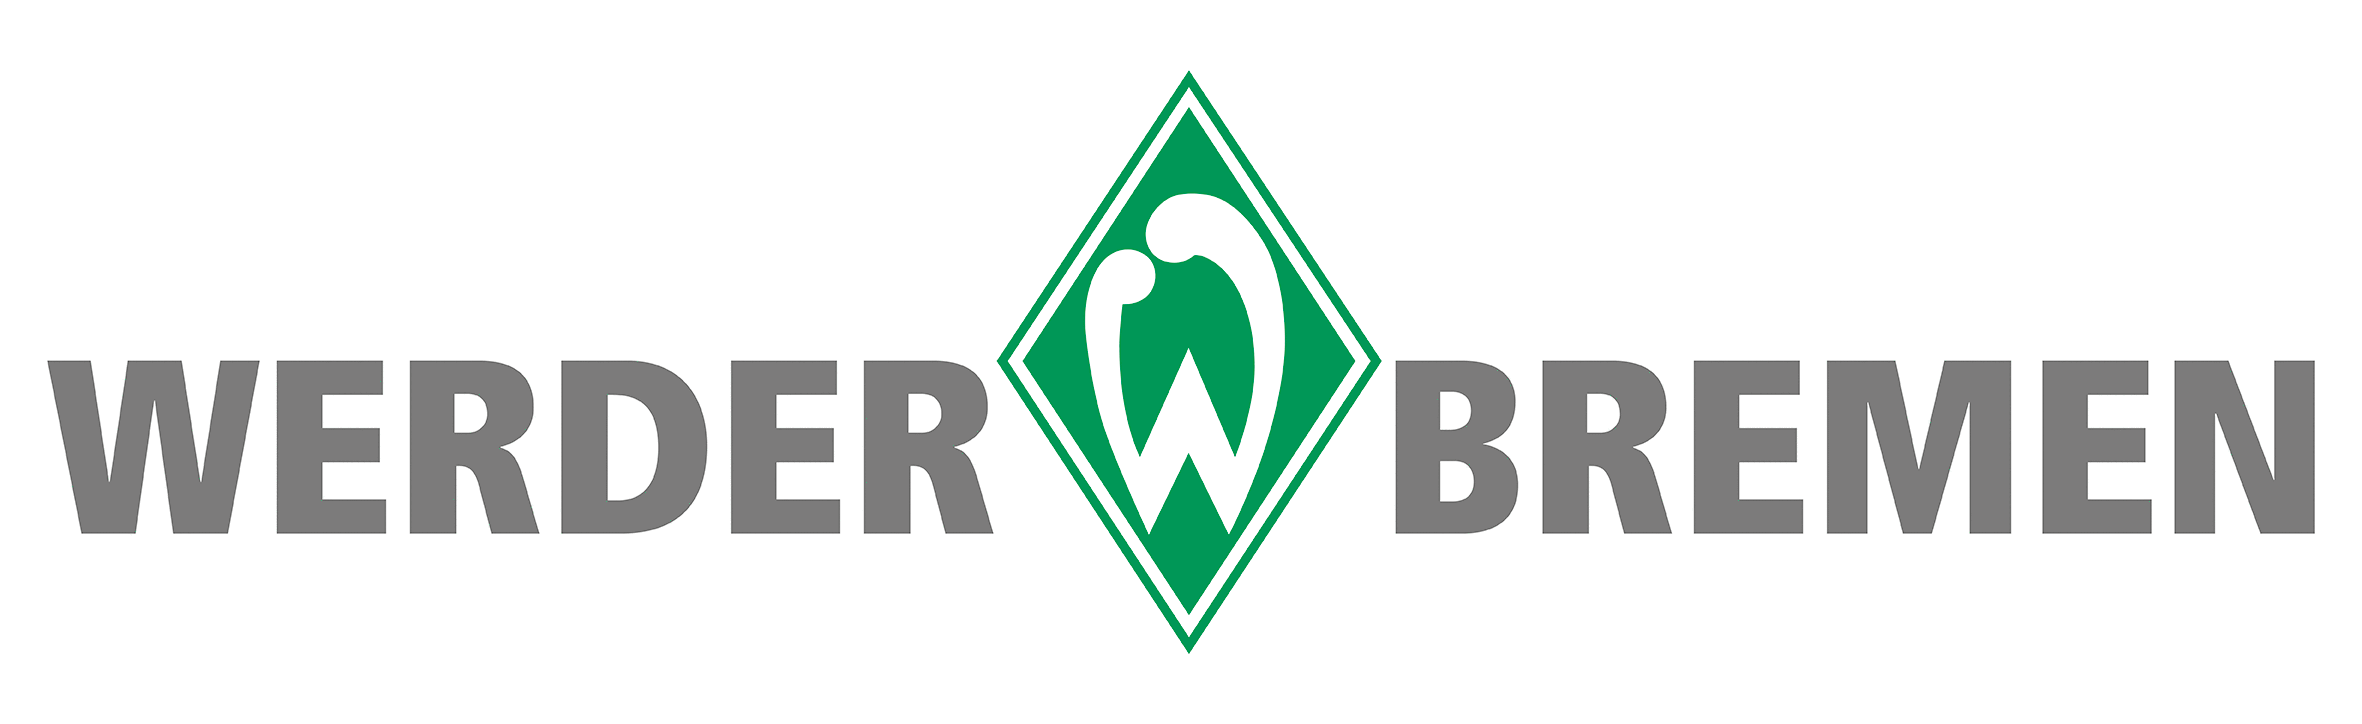 Richtlinien Und Logos Medienservice Sv Werder Bremen